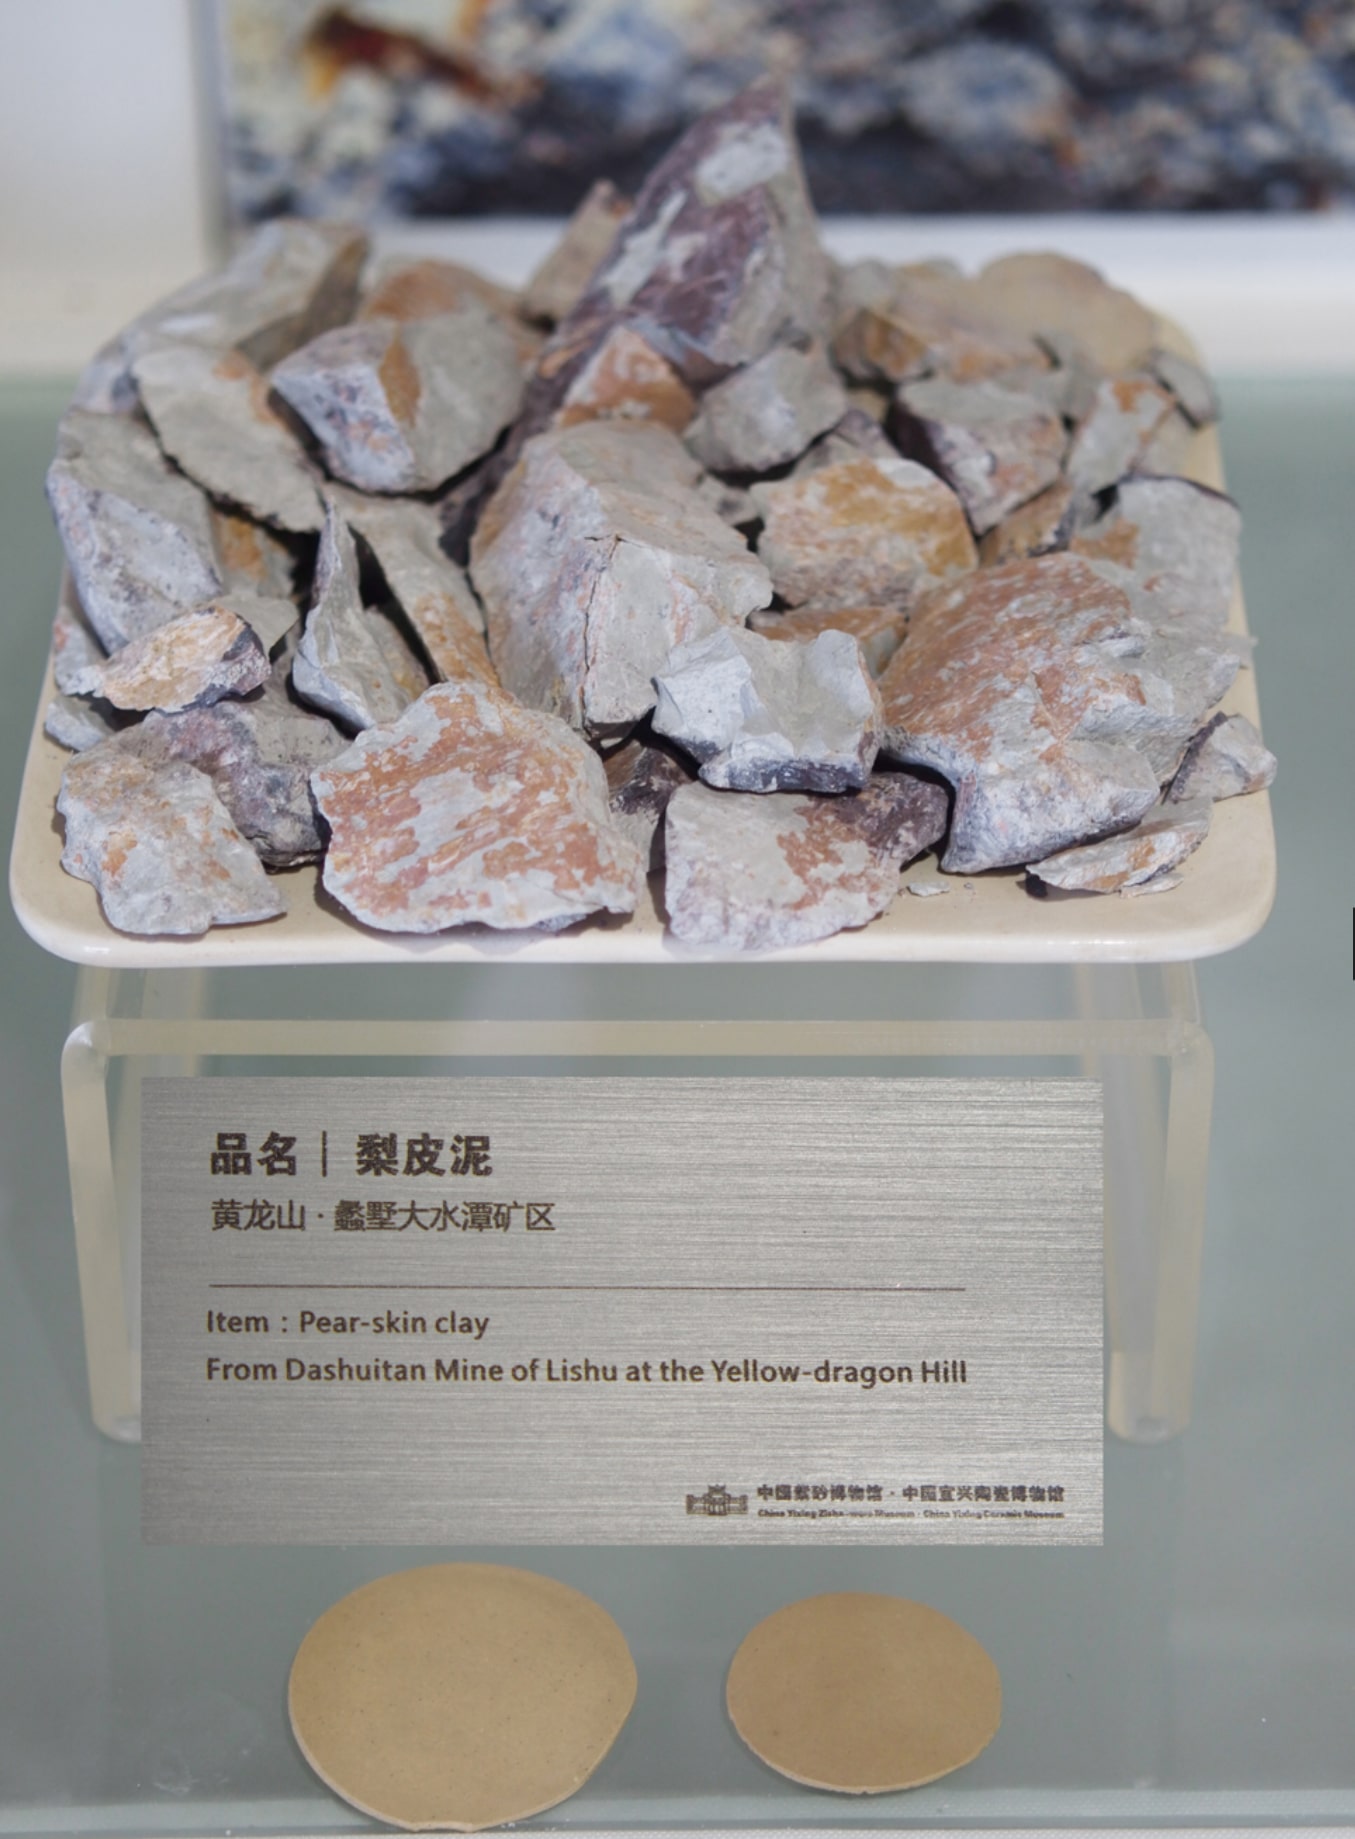 Khoáng thô lục nê lê bì khai thác ở mỏ Đại Thuỷ Đầm - Hoàng Long Sơn